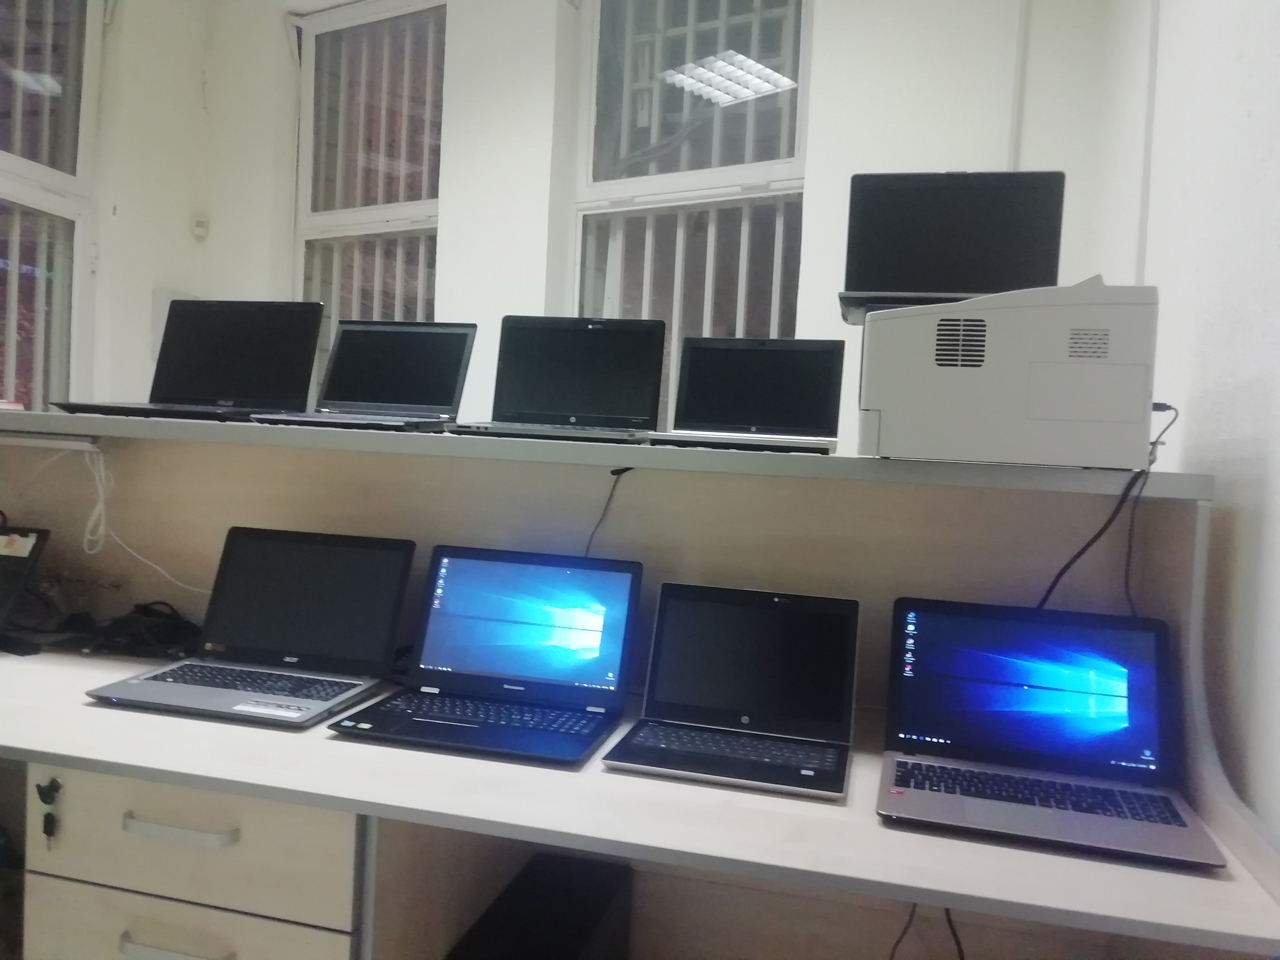 BG COMPUTERS - NOVI BEOGRAD Computers - Service Beograd